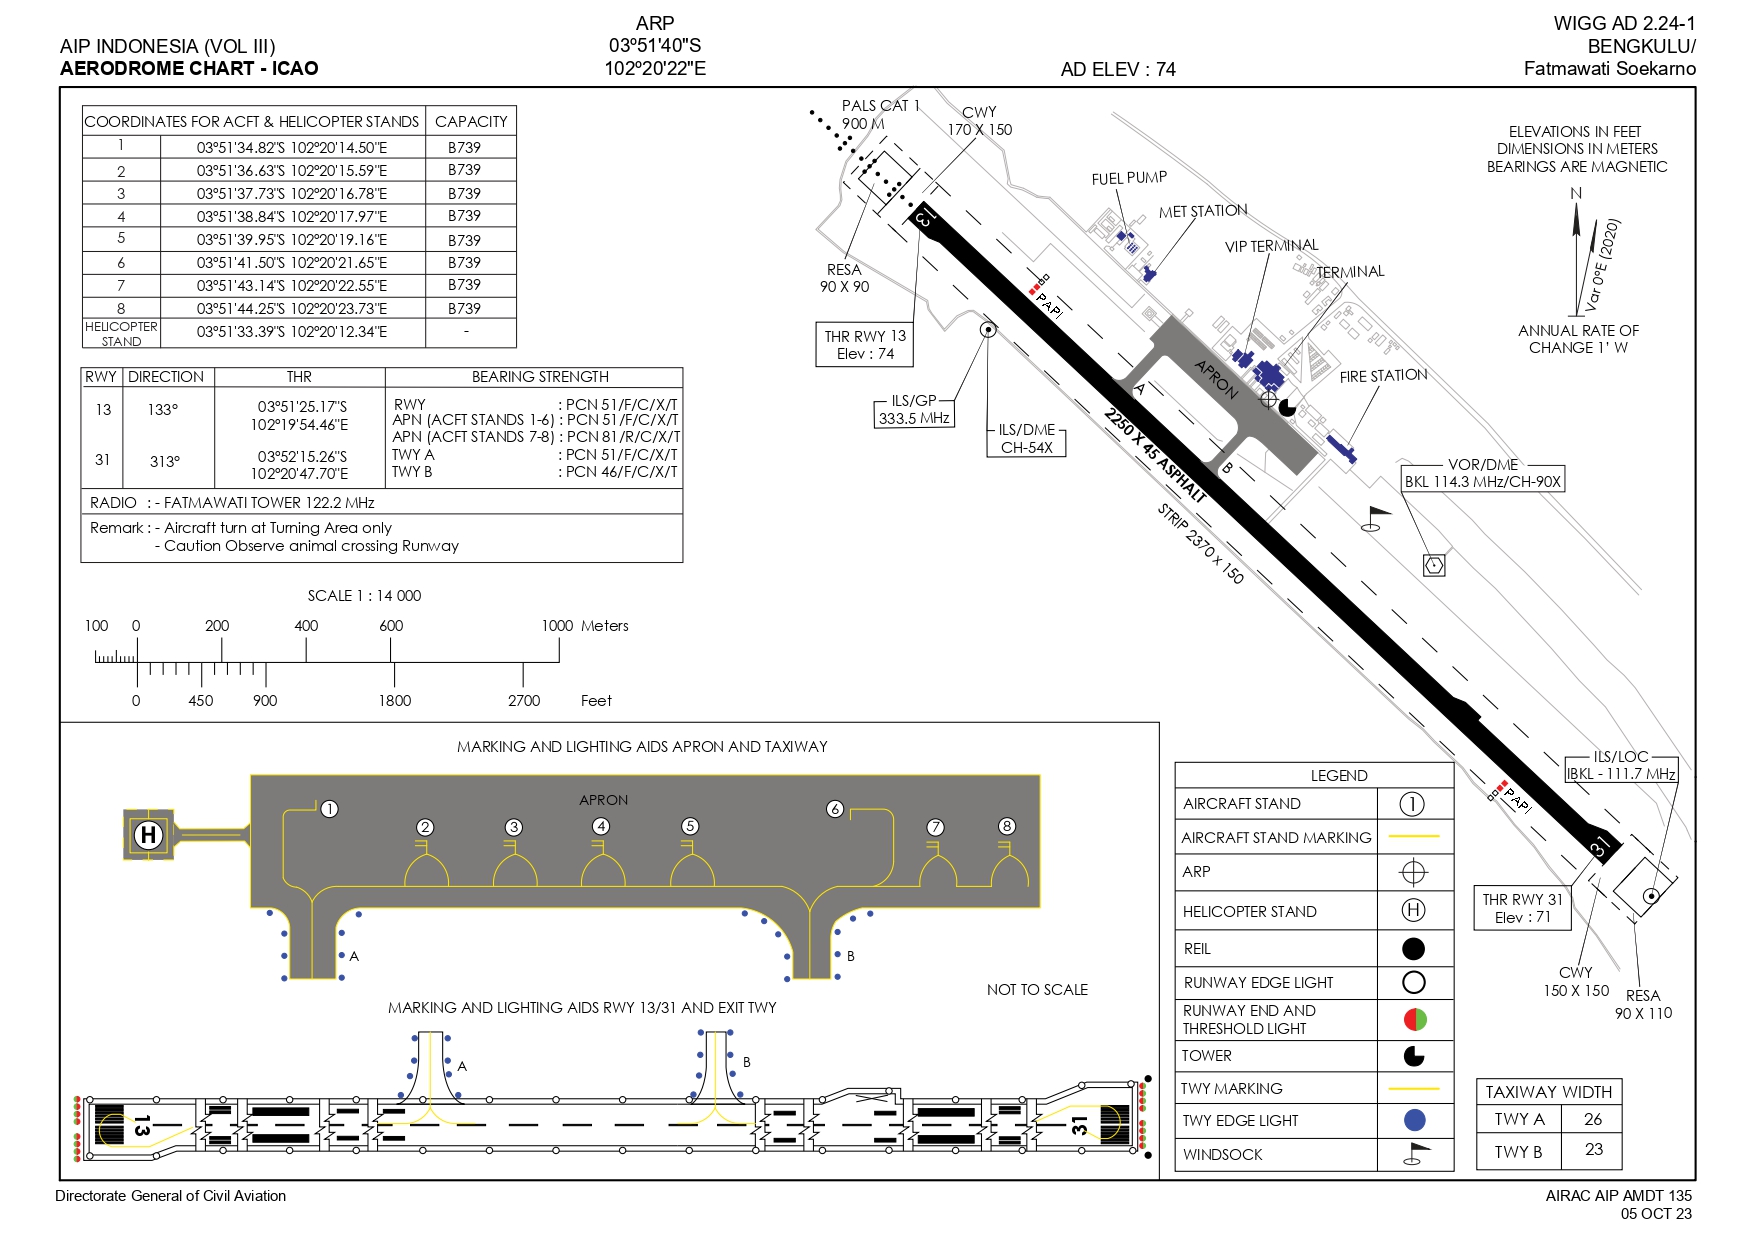 Gambar Peta Bandara AERODROME CHART BENGKULU/FATMAWATI SOEKARNO